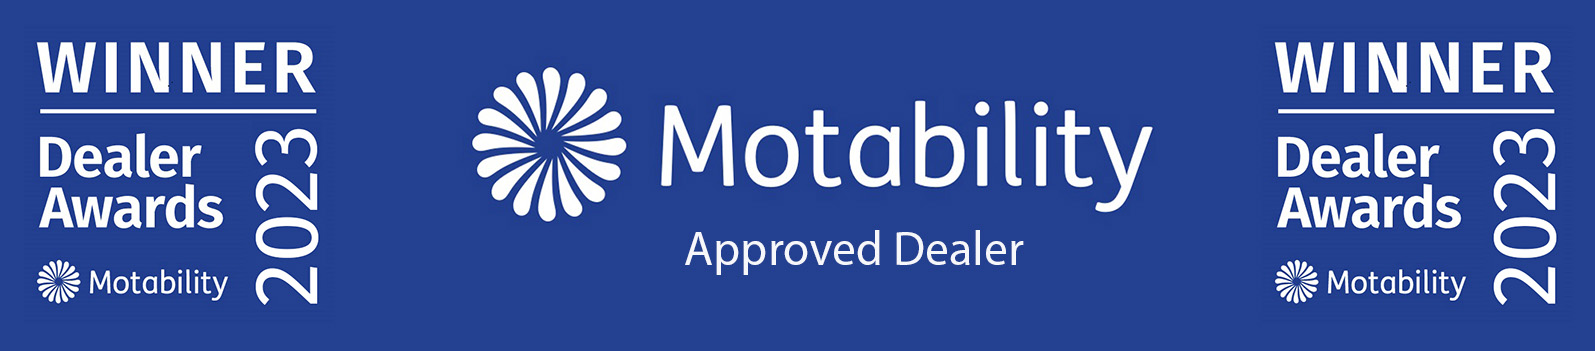 Motability Approved Dealer